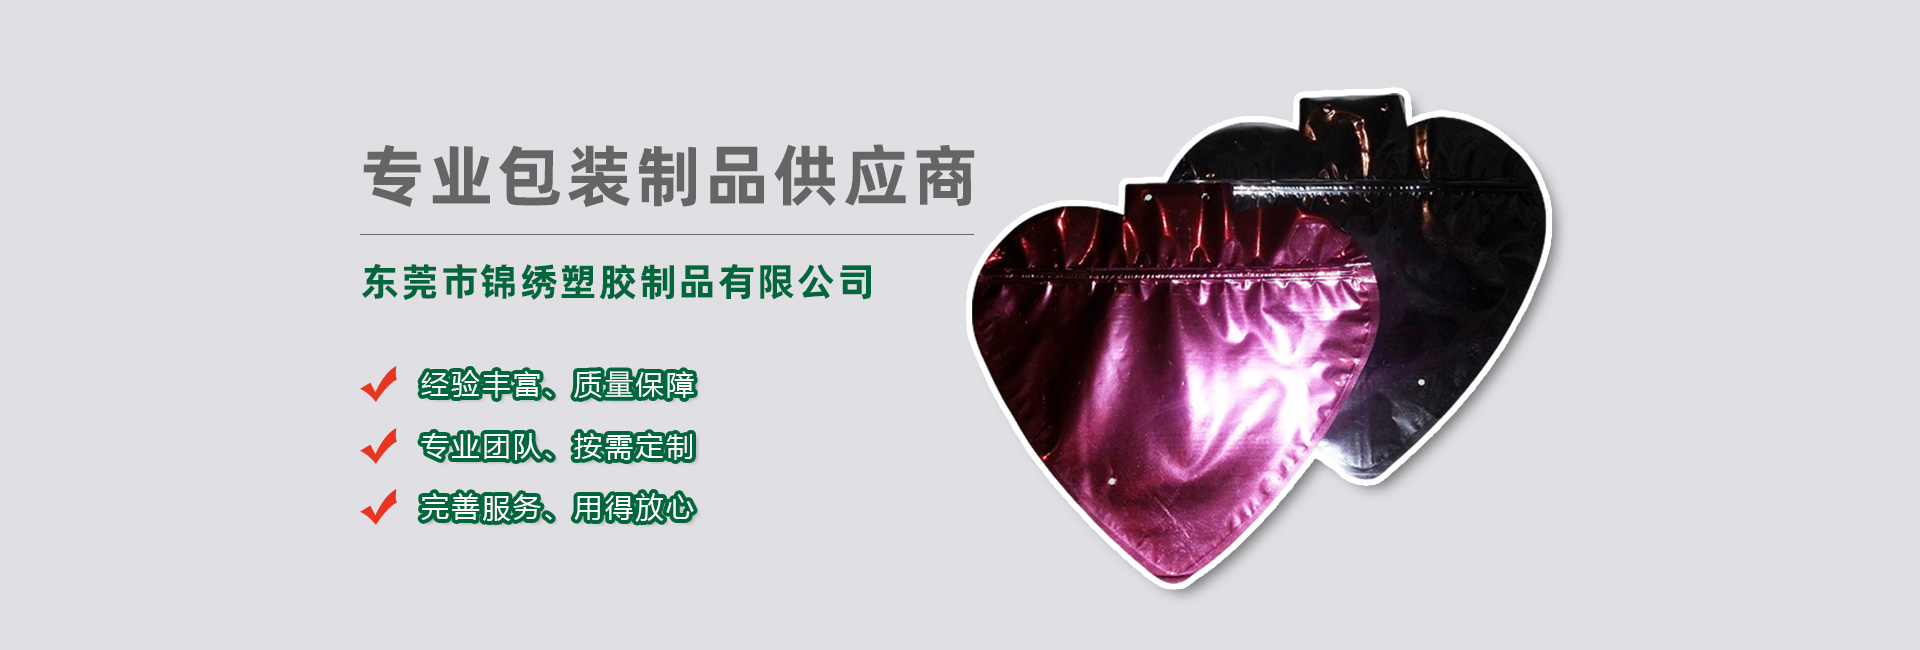 北京食品袋banner